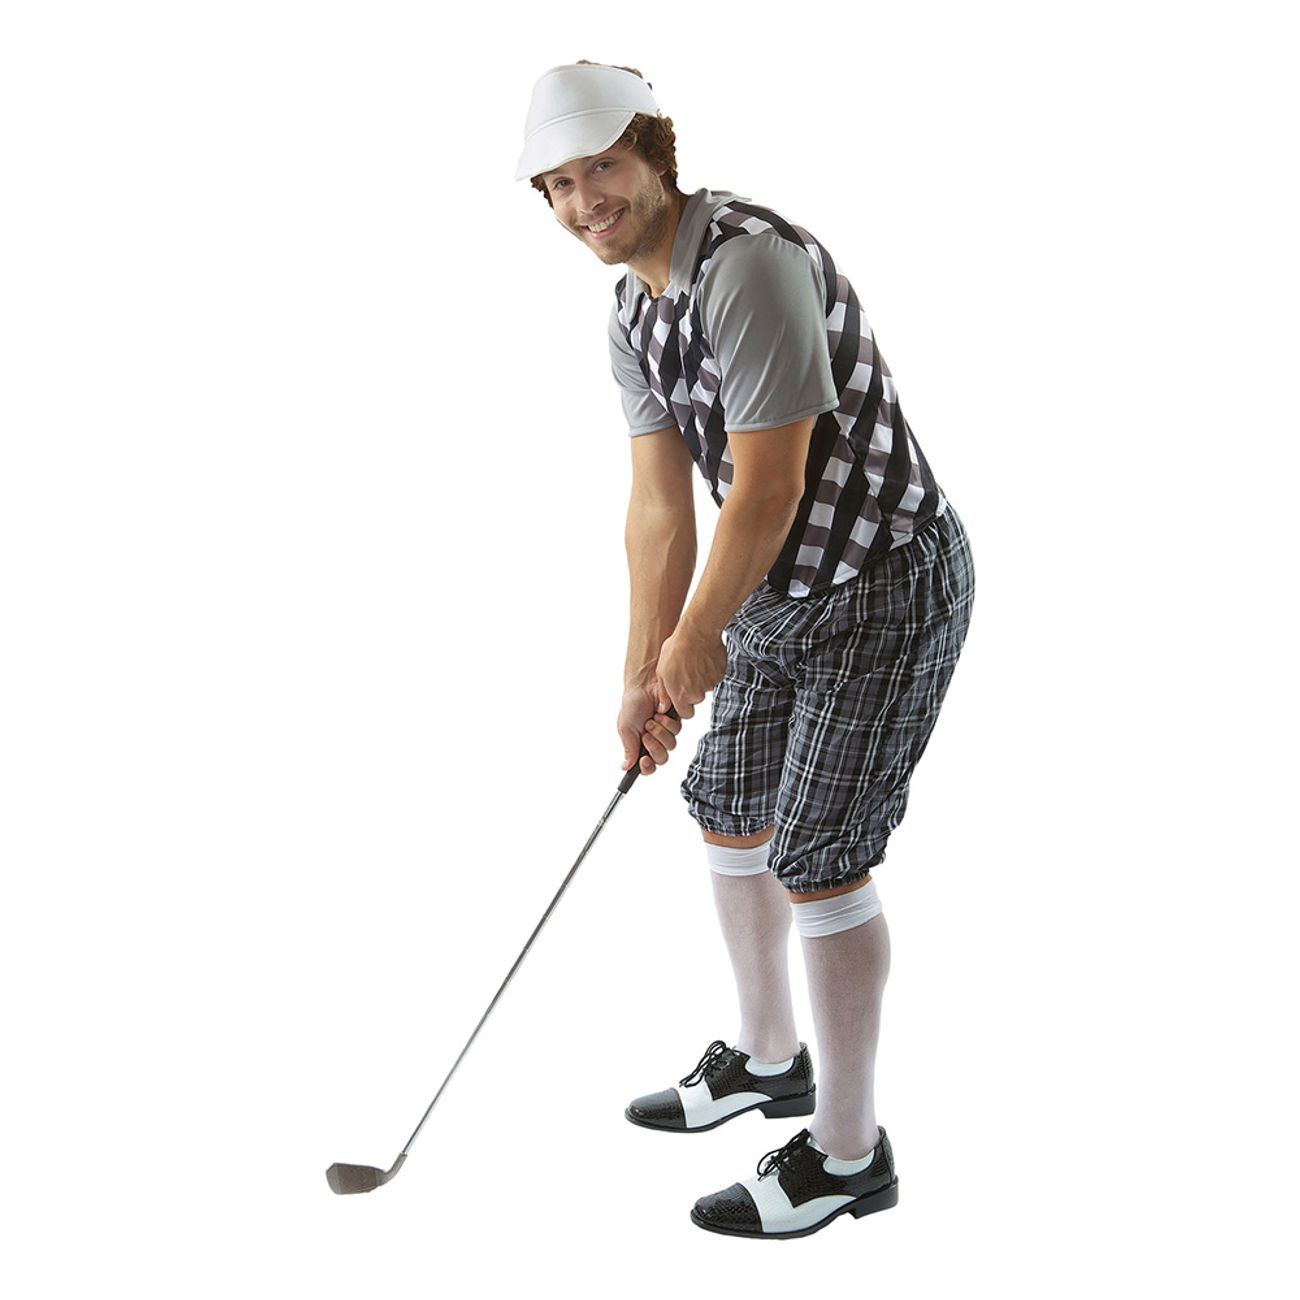 manlig-golfare-svartvit-maskeraddrakt-1